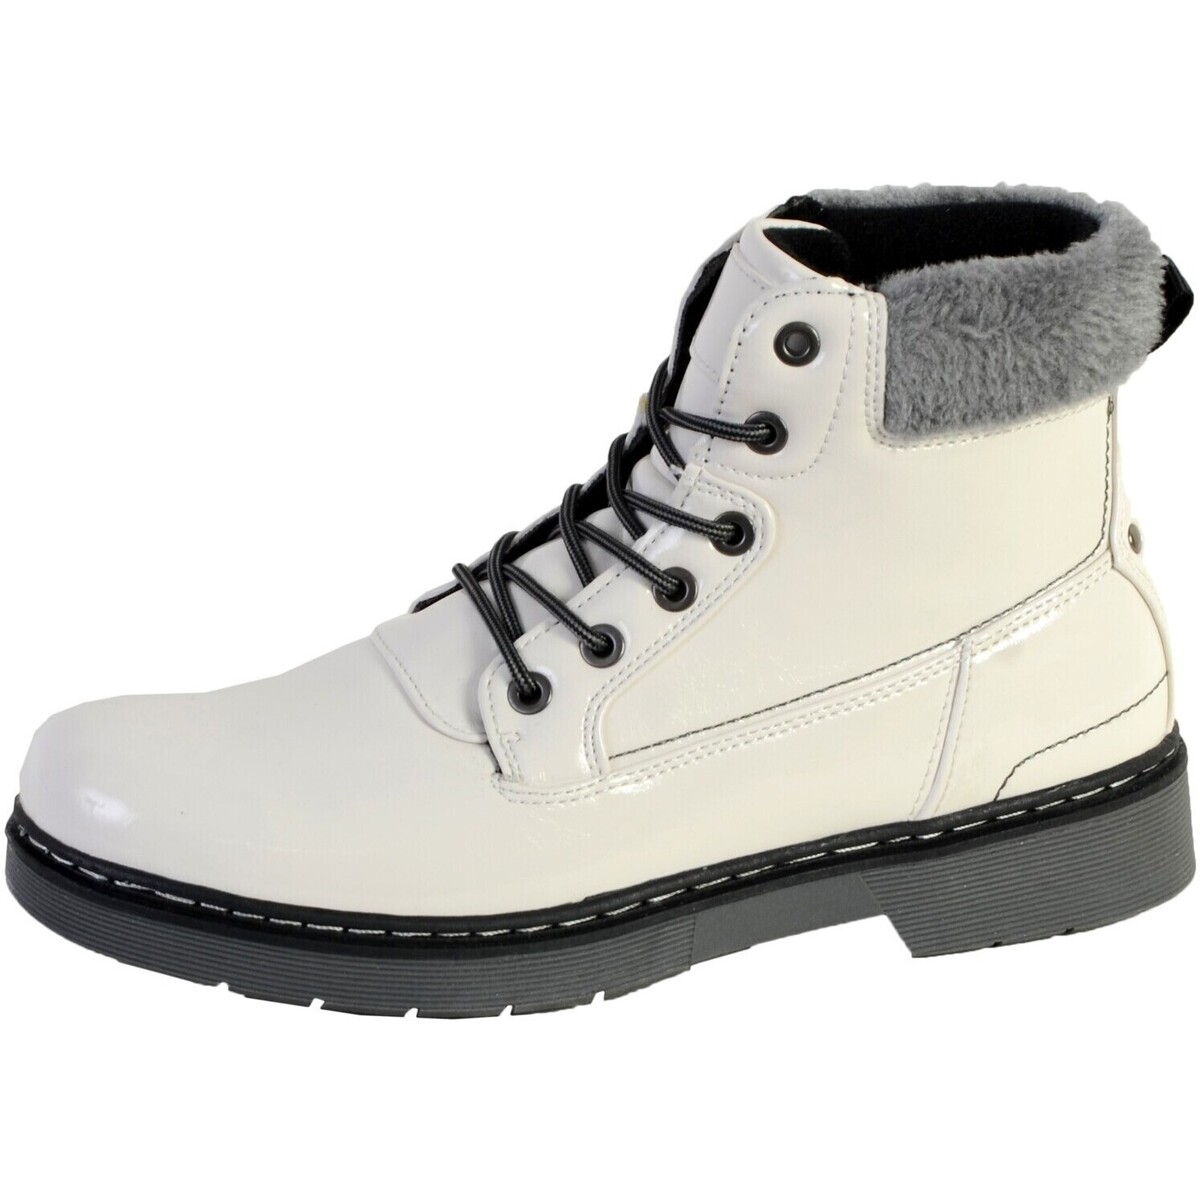 Chaussures Femme zapatillas de running entrenamiento amortiguación media pie normal Boots stampa CI3861 Blanc